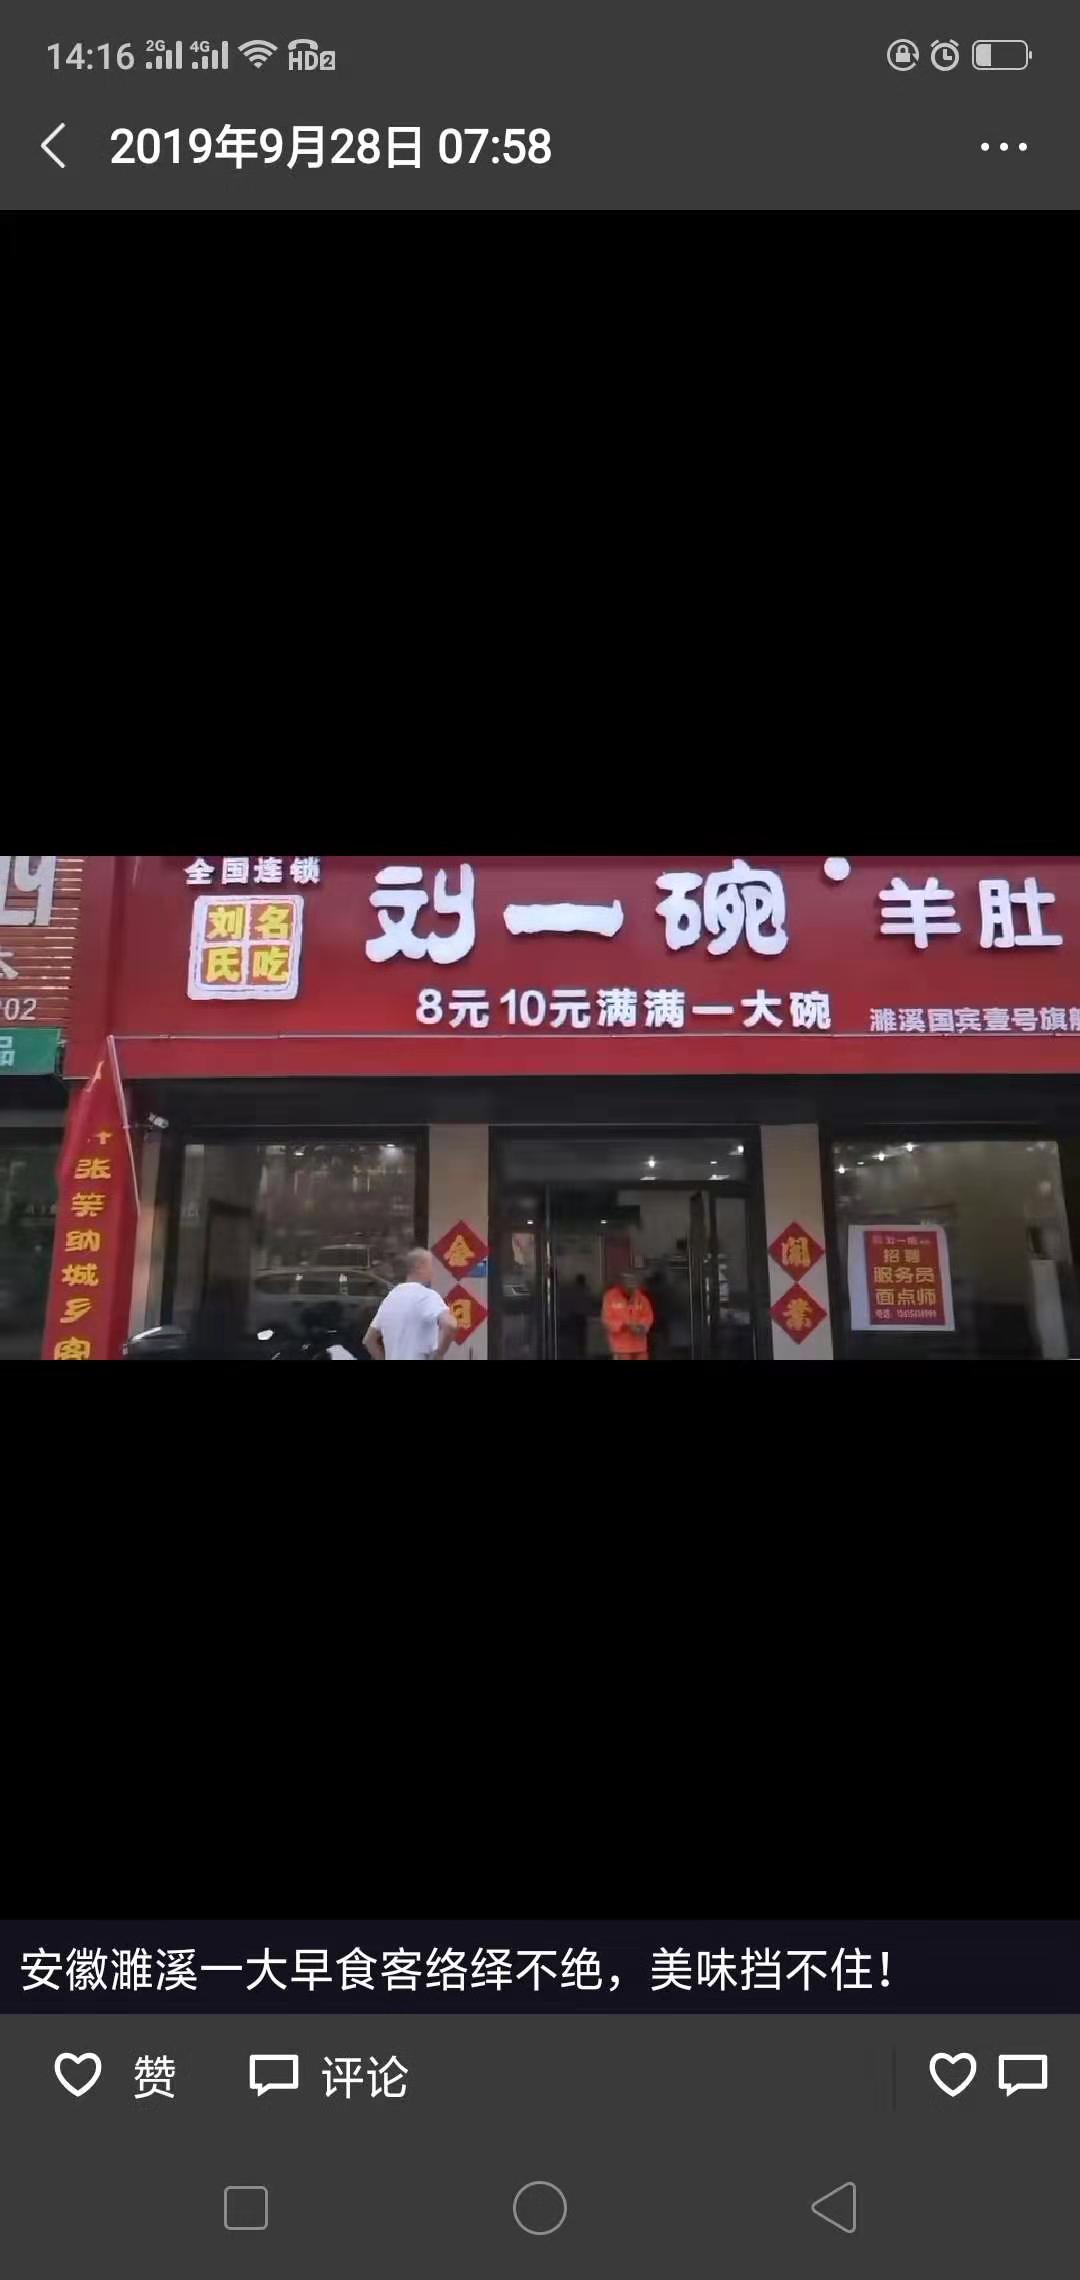 山东刘一碗淮北濉溪店于2019年9月28日盛大开业，祝开业大吉